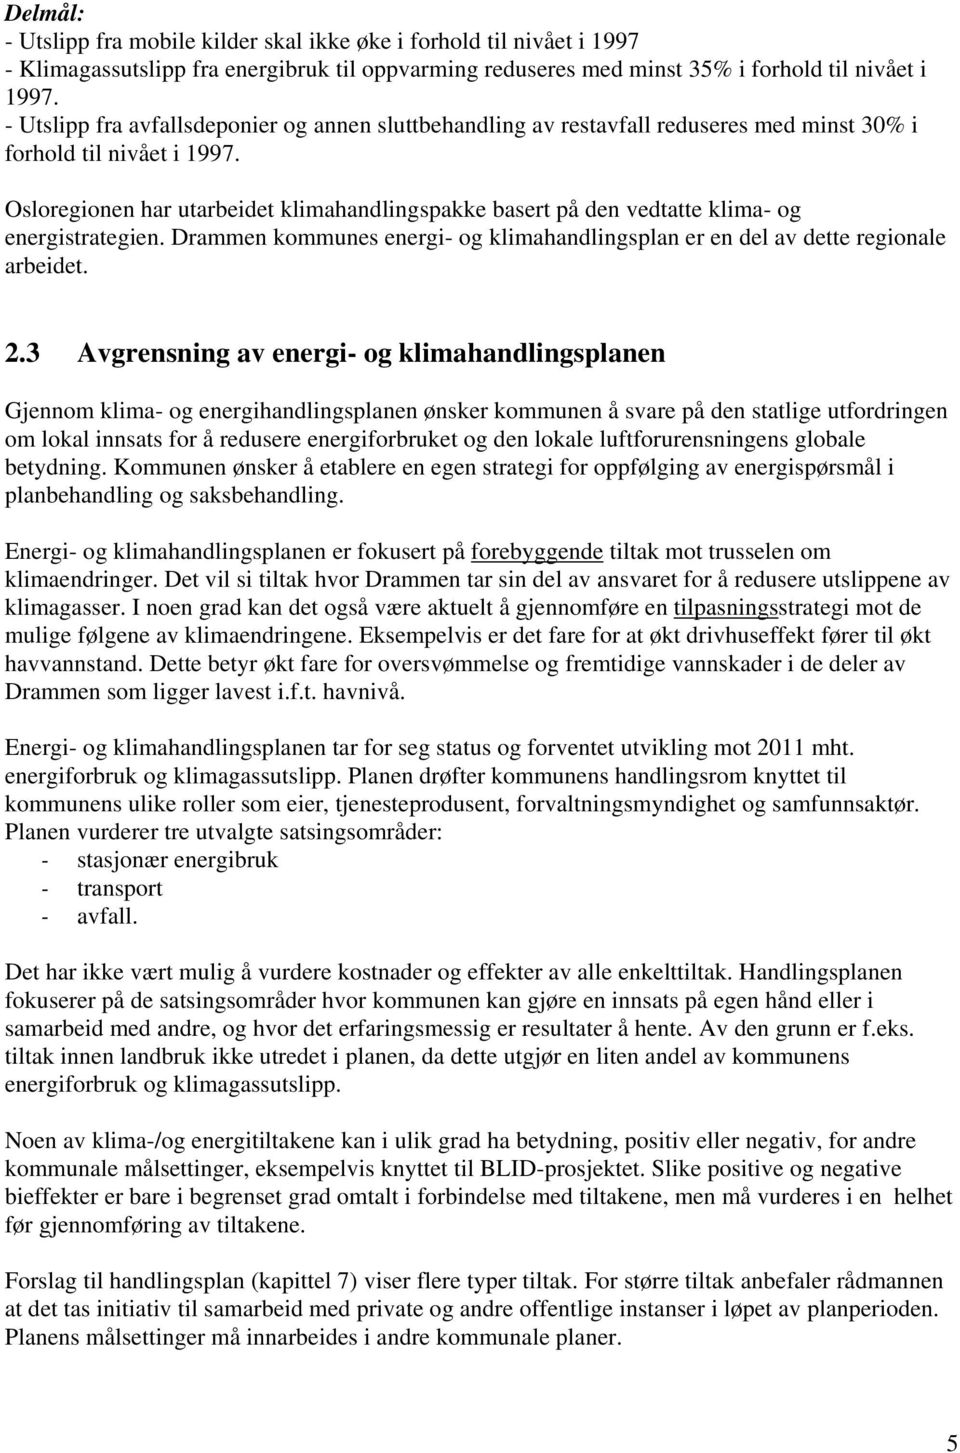 Osloregionen har utarbeidet klimahandlingspakke basert på den vedtatte klima- og energistrategien. Drammen kommunes energi- og klimahandlingsplan er en del av dette regionale arbeidet. 2.